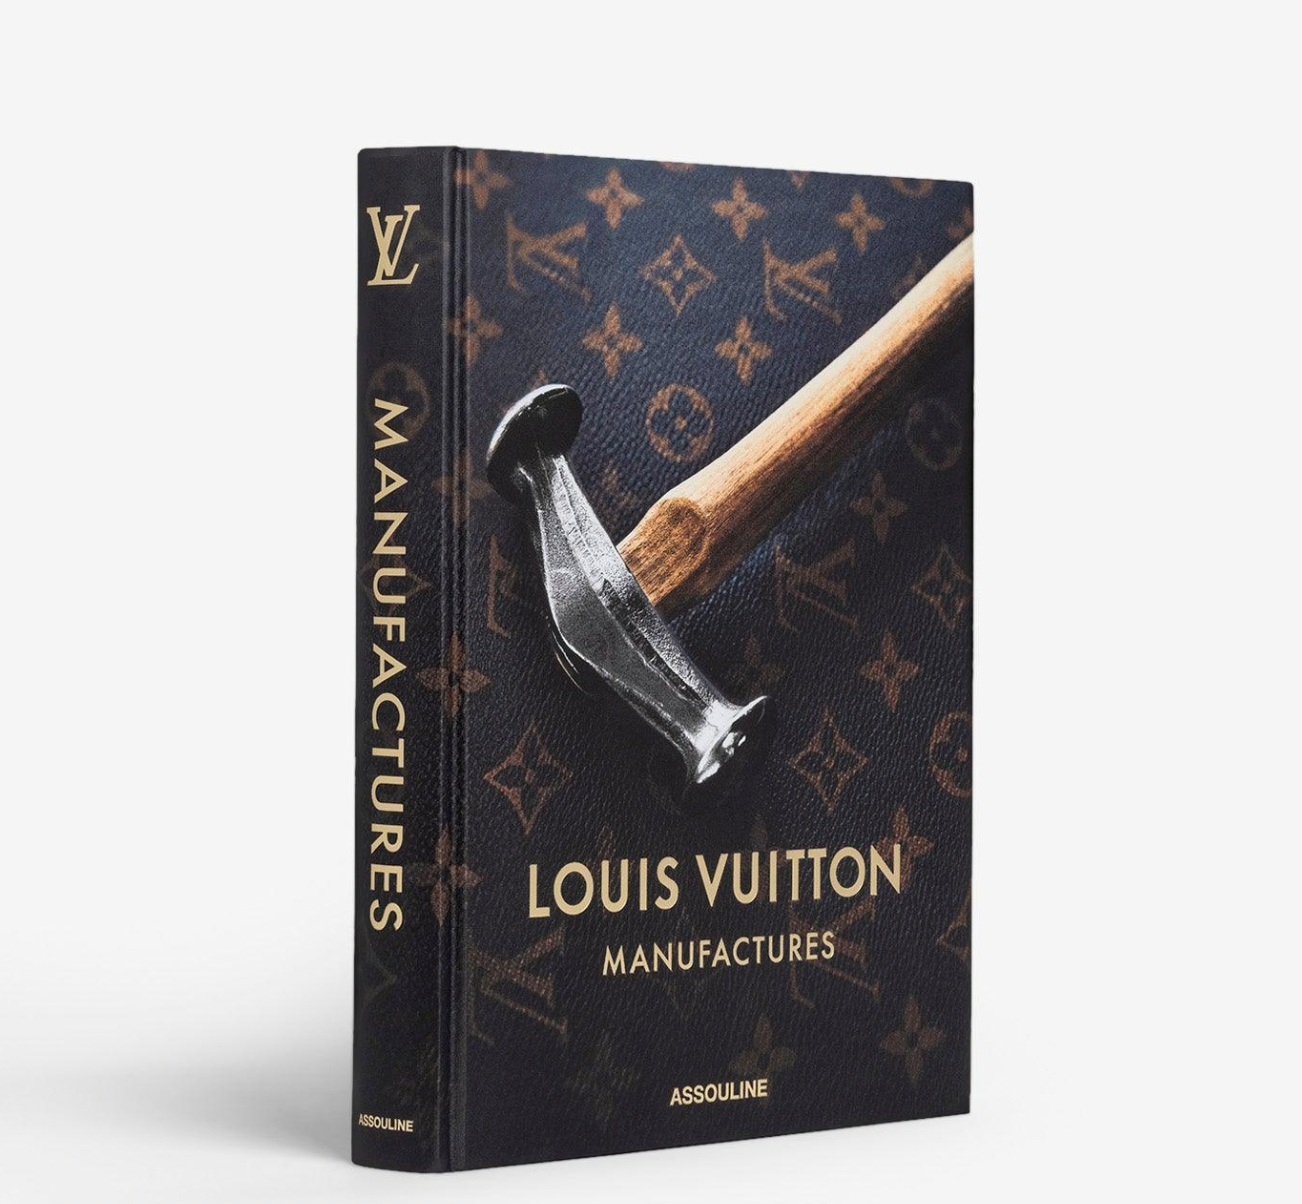 Louis Vuitton Manufactures